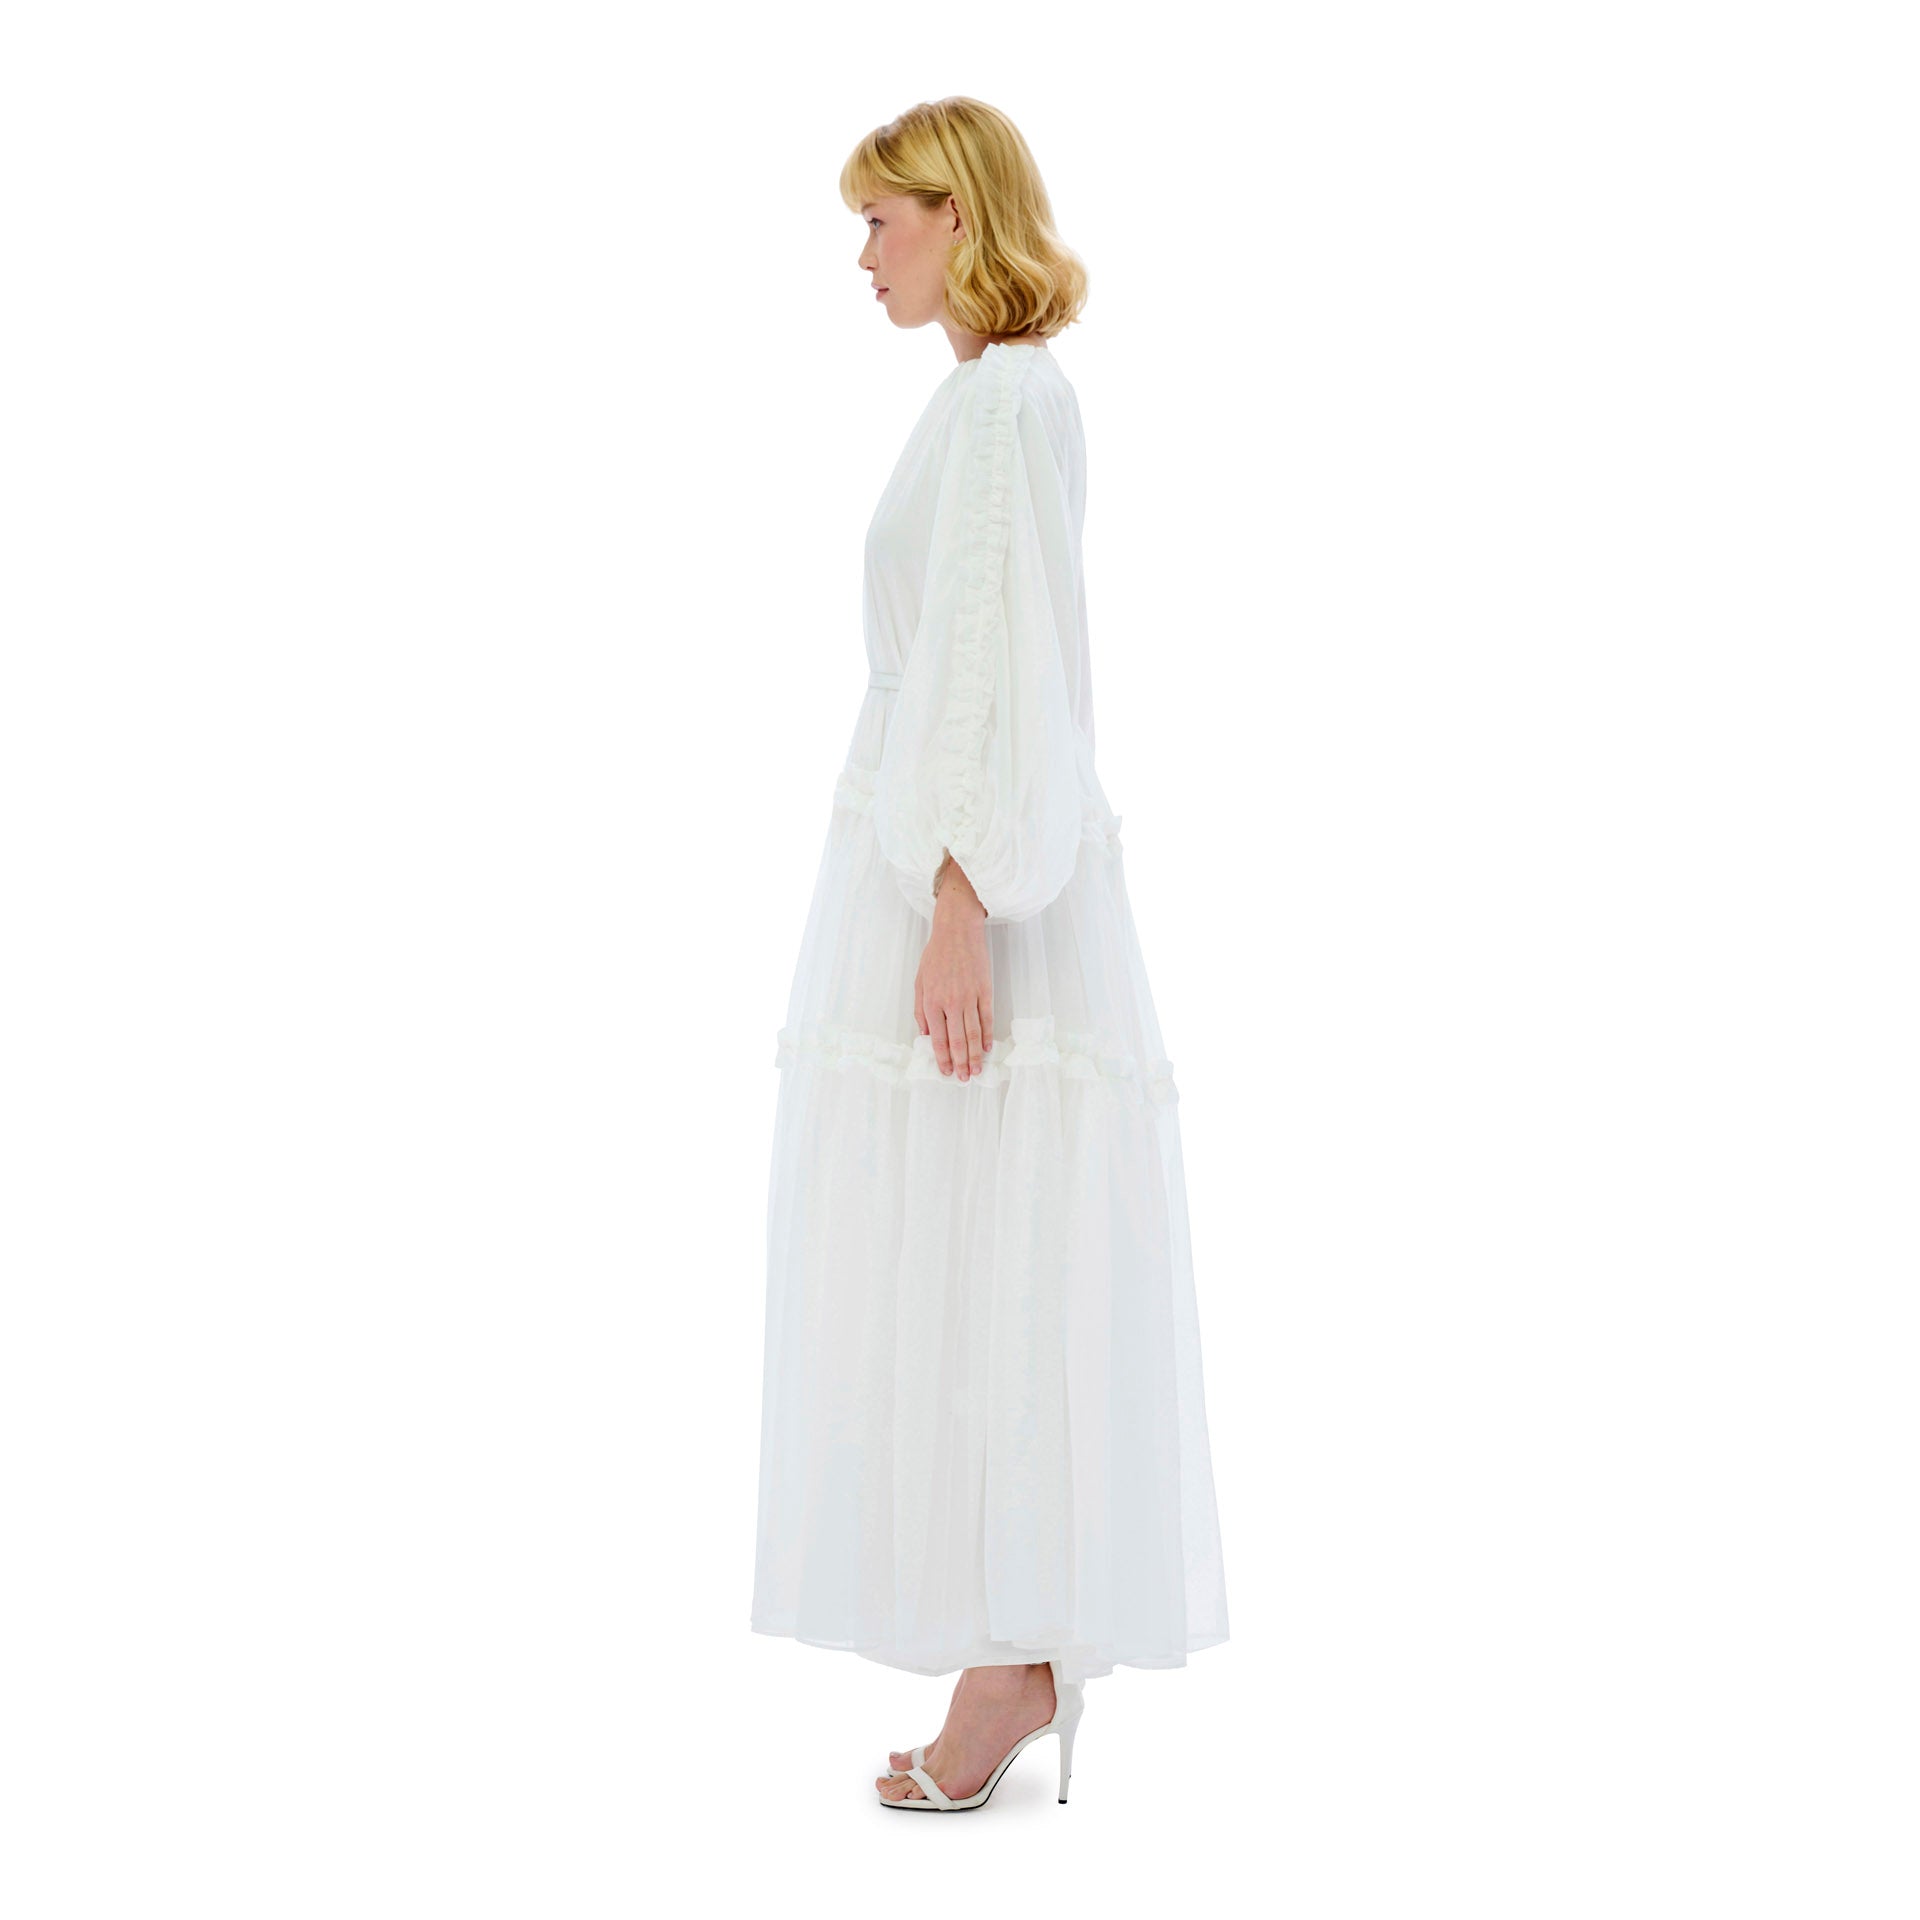 White Chiffon Flowy Dress From Miha